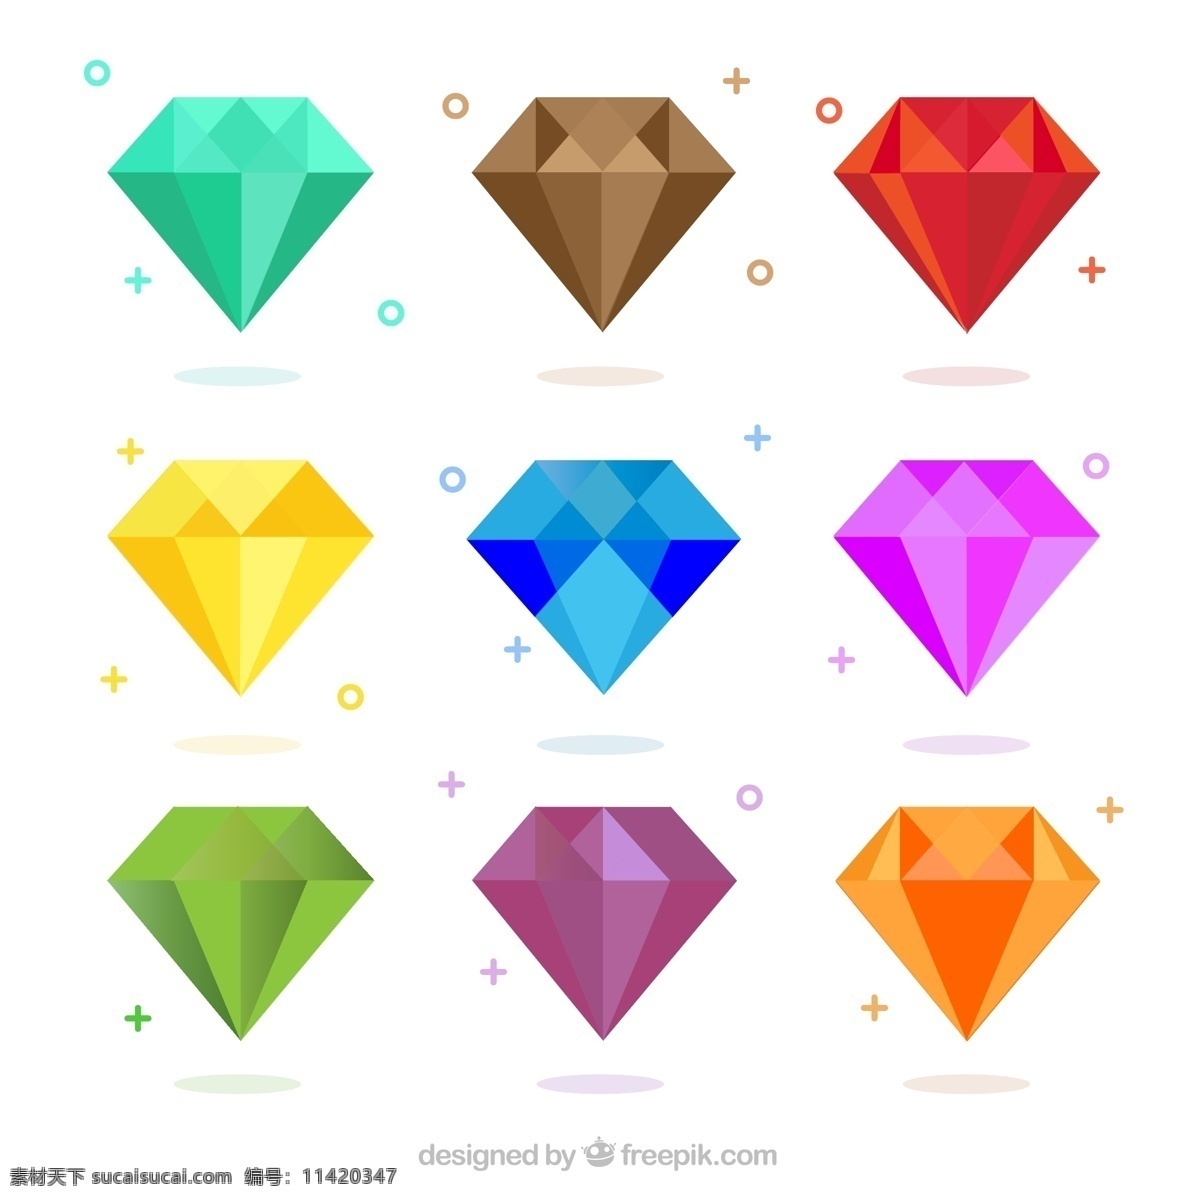 平面设计 中 彩色 钻石 包装 几何 形状 豪华 色彩 平面 颜色 珠宝 石头 几何图形 水晶 宝石 闪亮